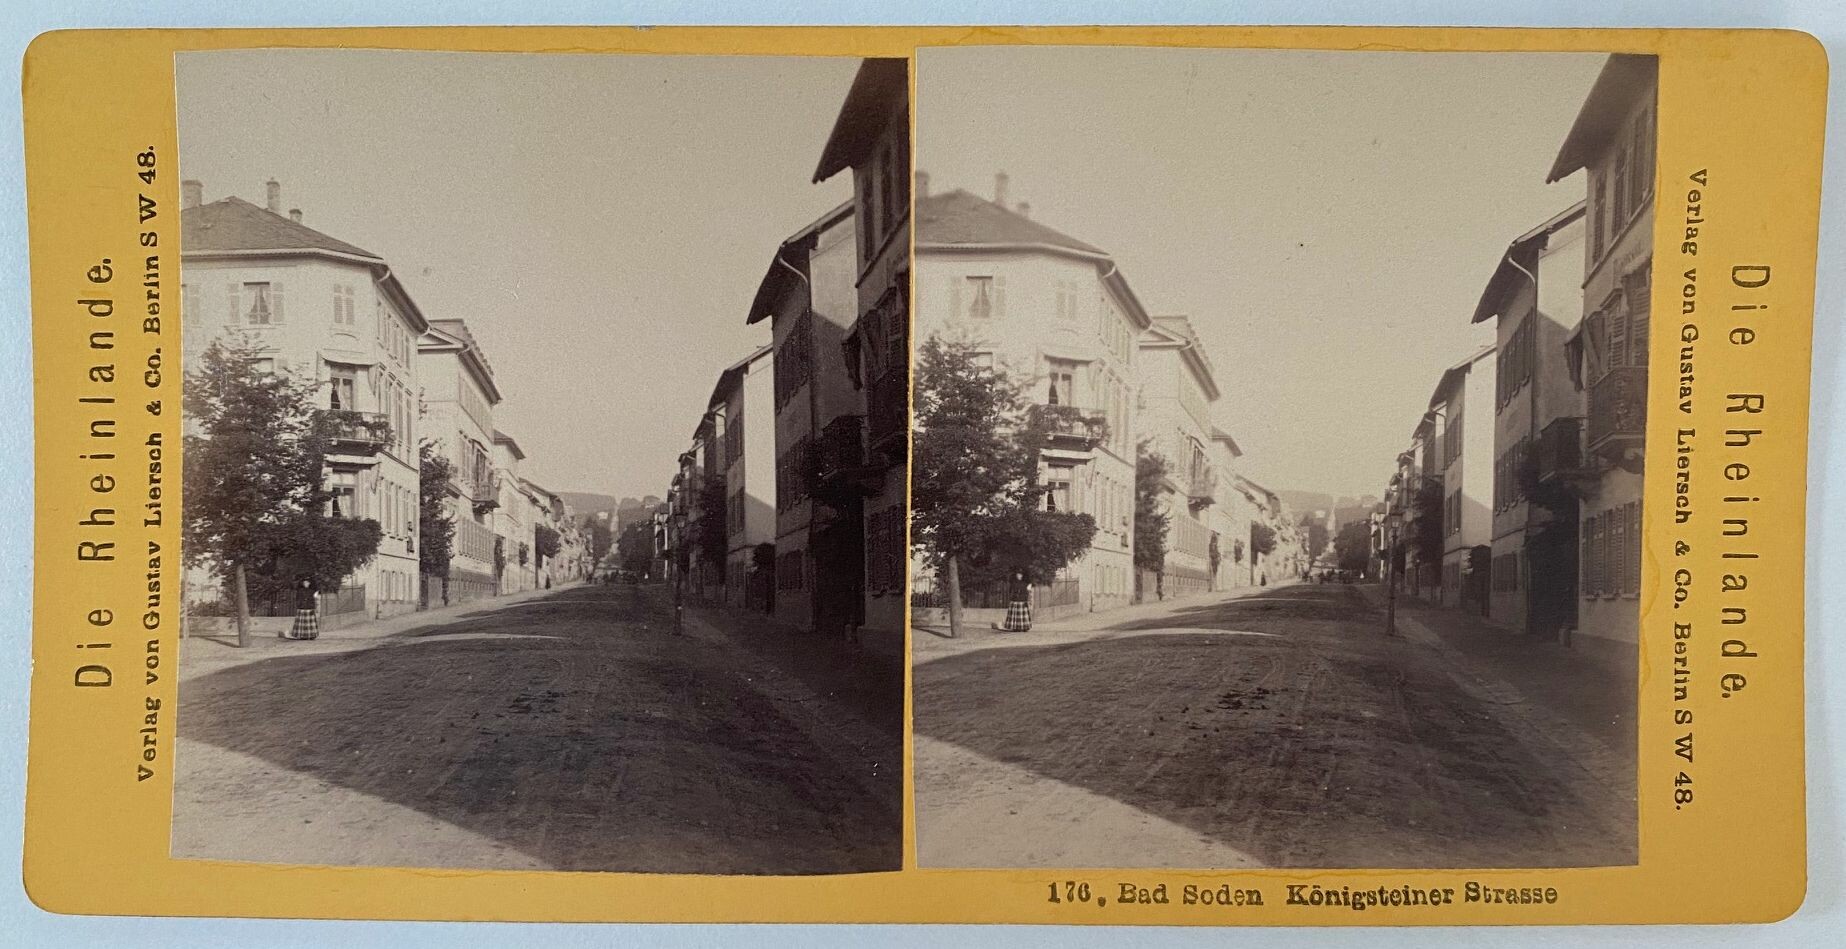 Taunus, Nr. 176. Bad Soden Königsteiner Strasse, ca. 1900 (Taunus-Rhein-Main - Regionalgeschichtliche Sammlung Dr. Stefan Naas CC BY-NC-SA)